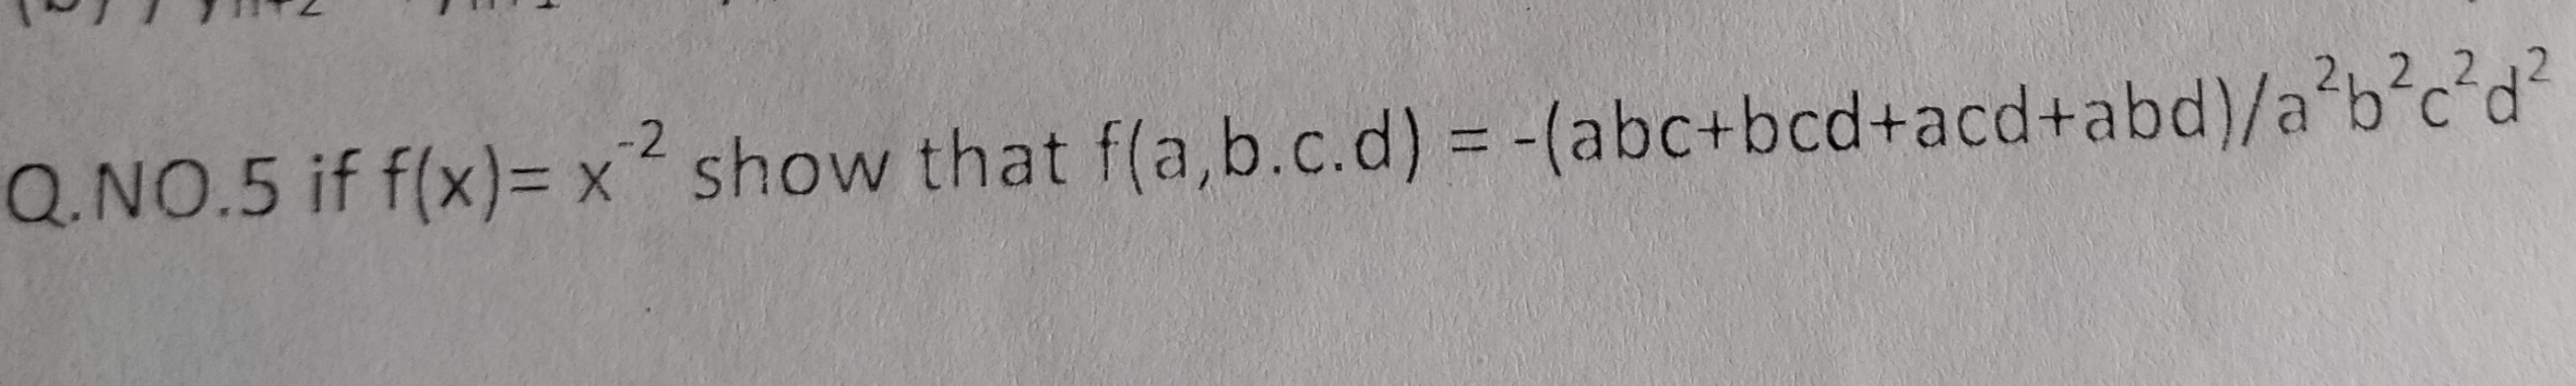 -2
2 2 2
Q.NO.5 if f(x)=x show that f(a,b.c.d) = -(abc+bcd+acd+abd)/a b°c°d
